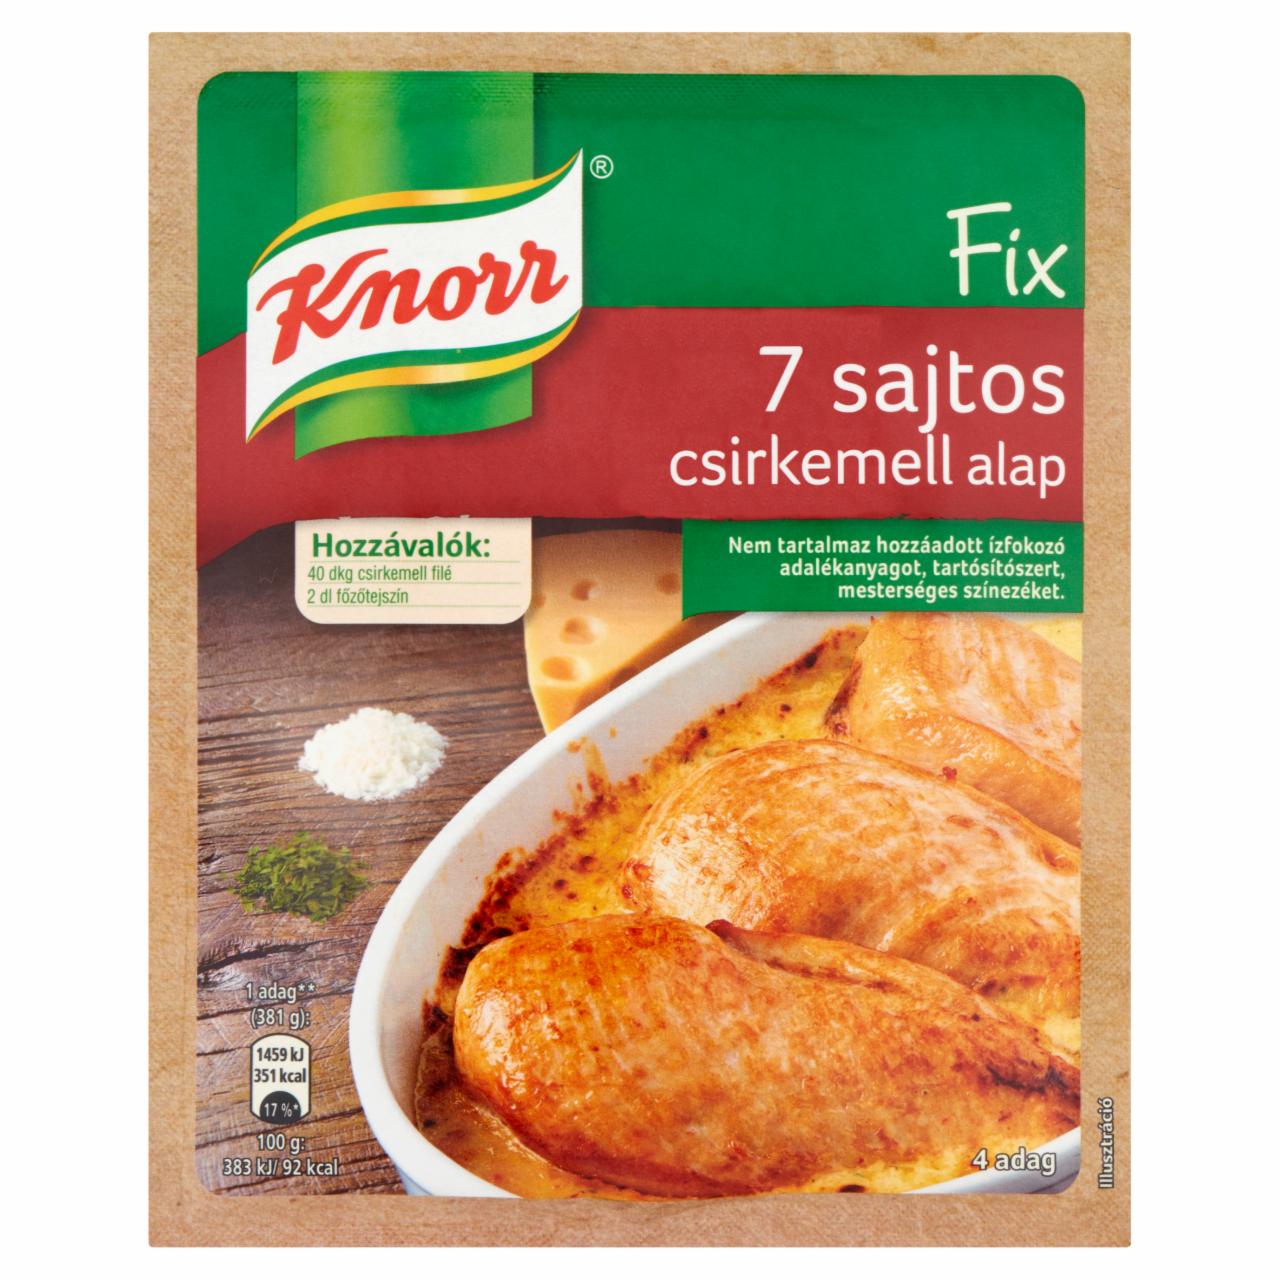 Képek - Knorr 7 sajtos csirkemell alap 35 g